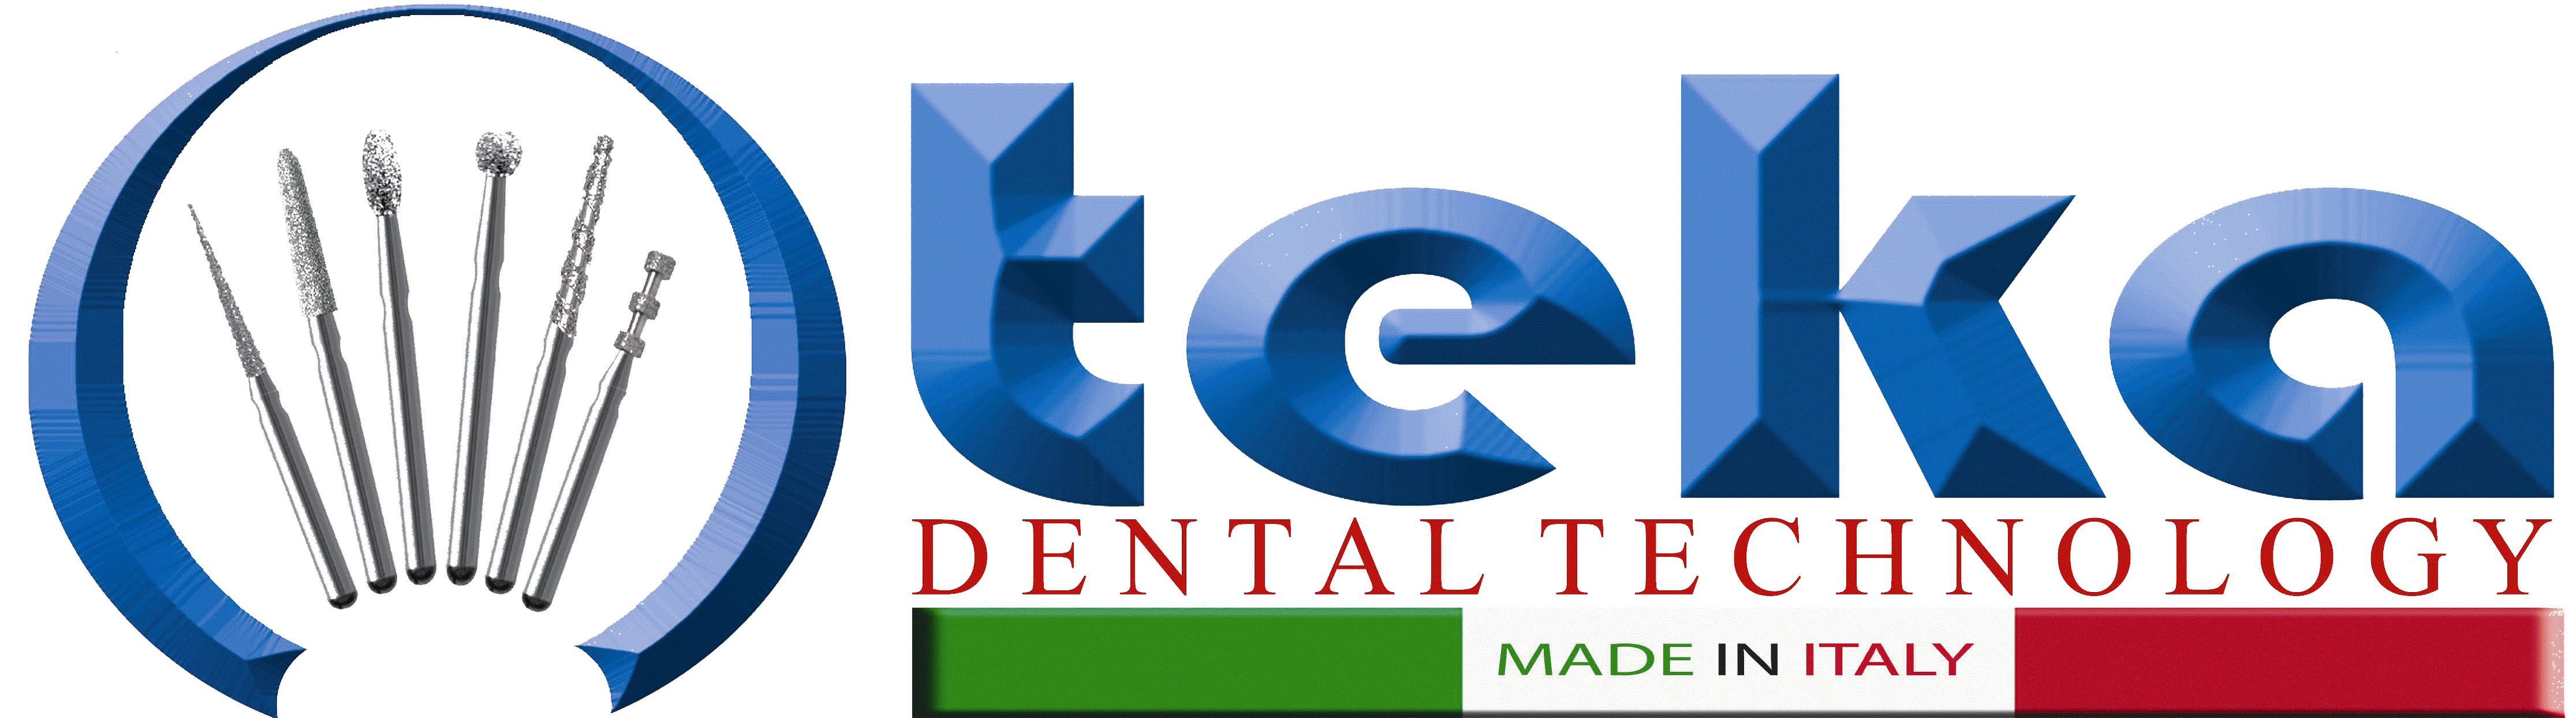 Teka Dental Technology